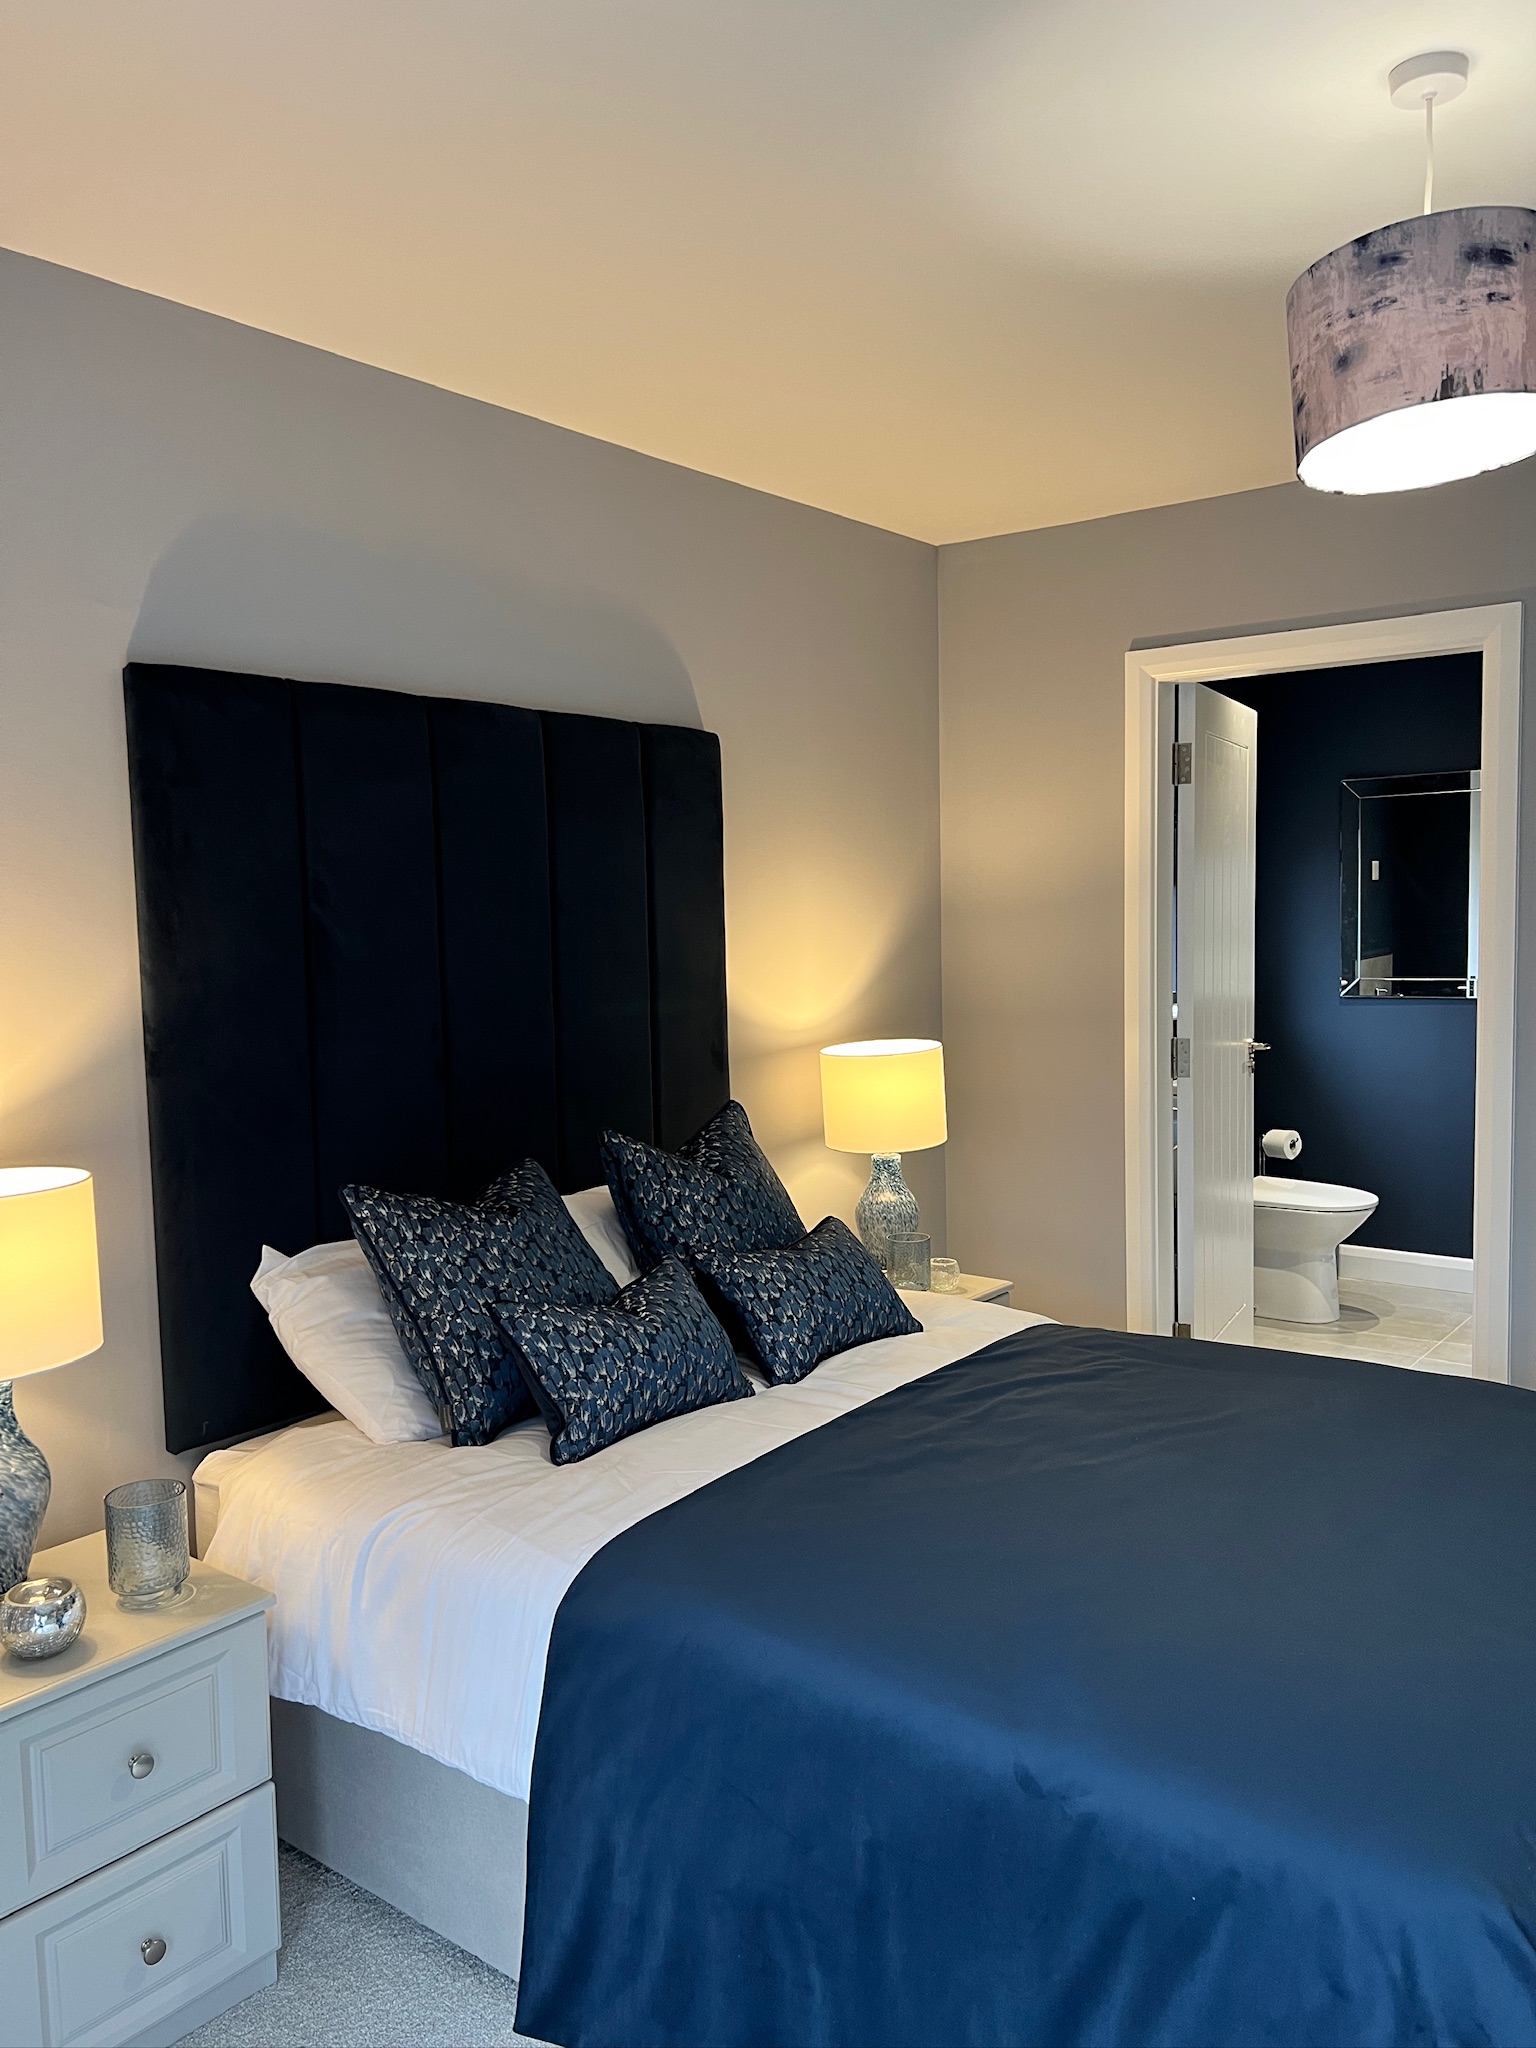 Bedroom Design Northern Ireland